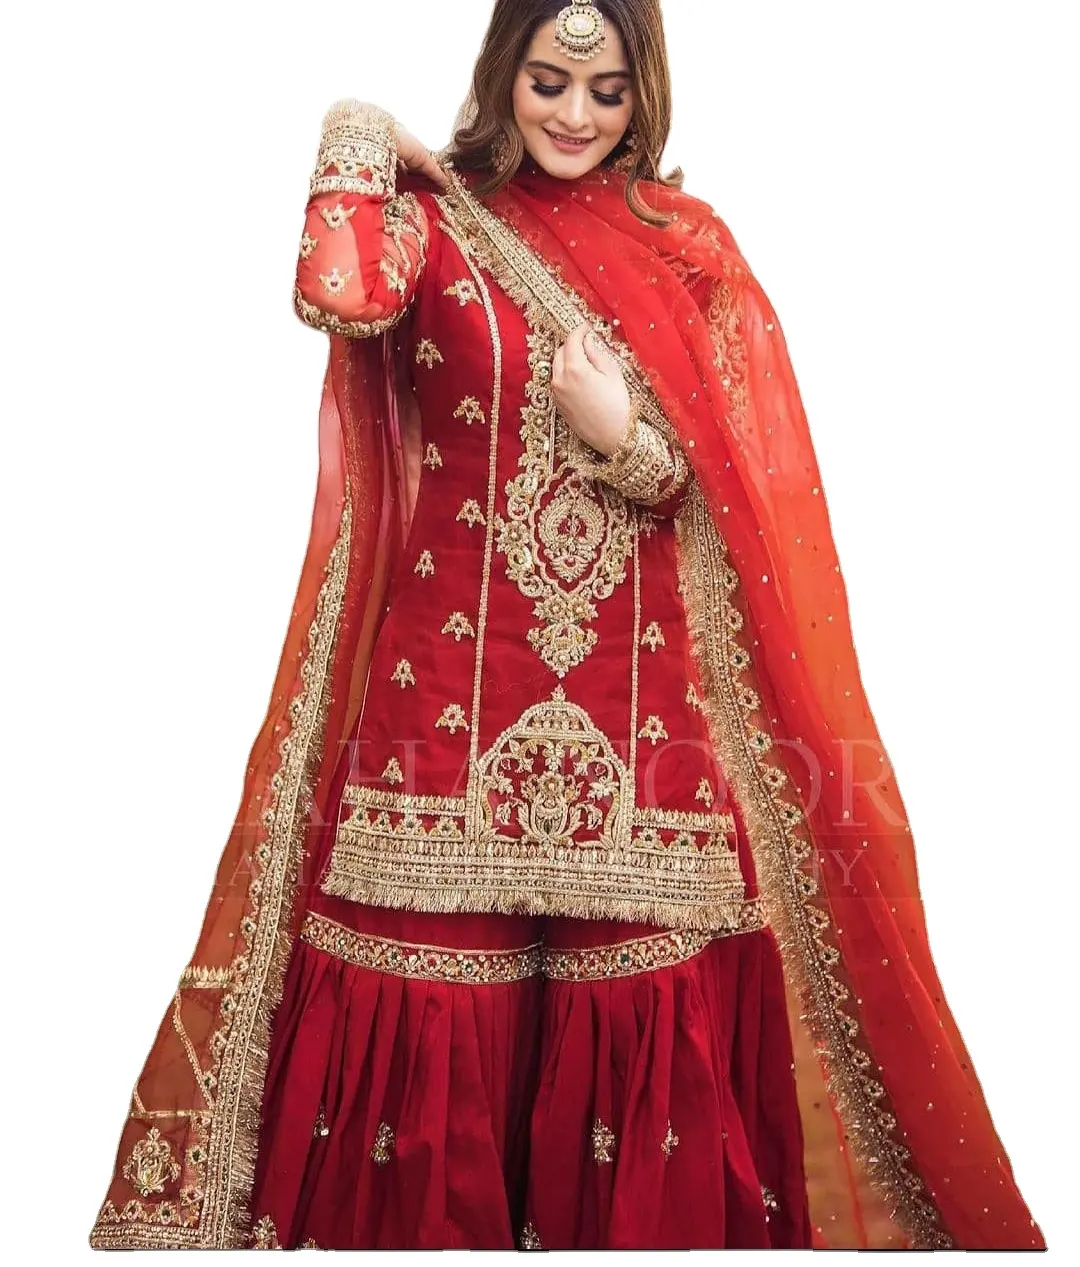 Bridal Zware Lehnga Jurk Voor Pakistaanse Bruid Designer Lehnga Voor Bruid Jurk Voor Bruiloft Dag Aziatische Bruid Bruiloft Dag Jurk